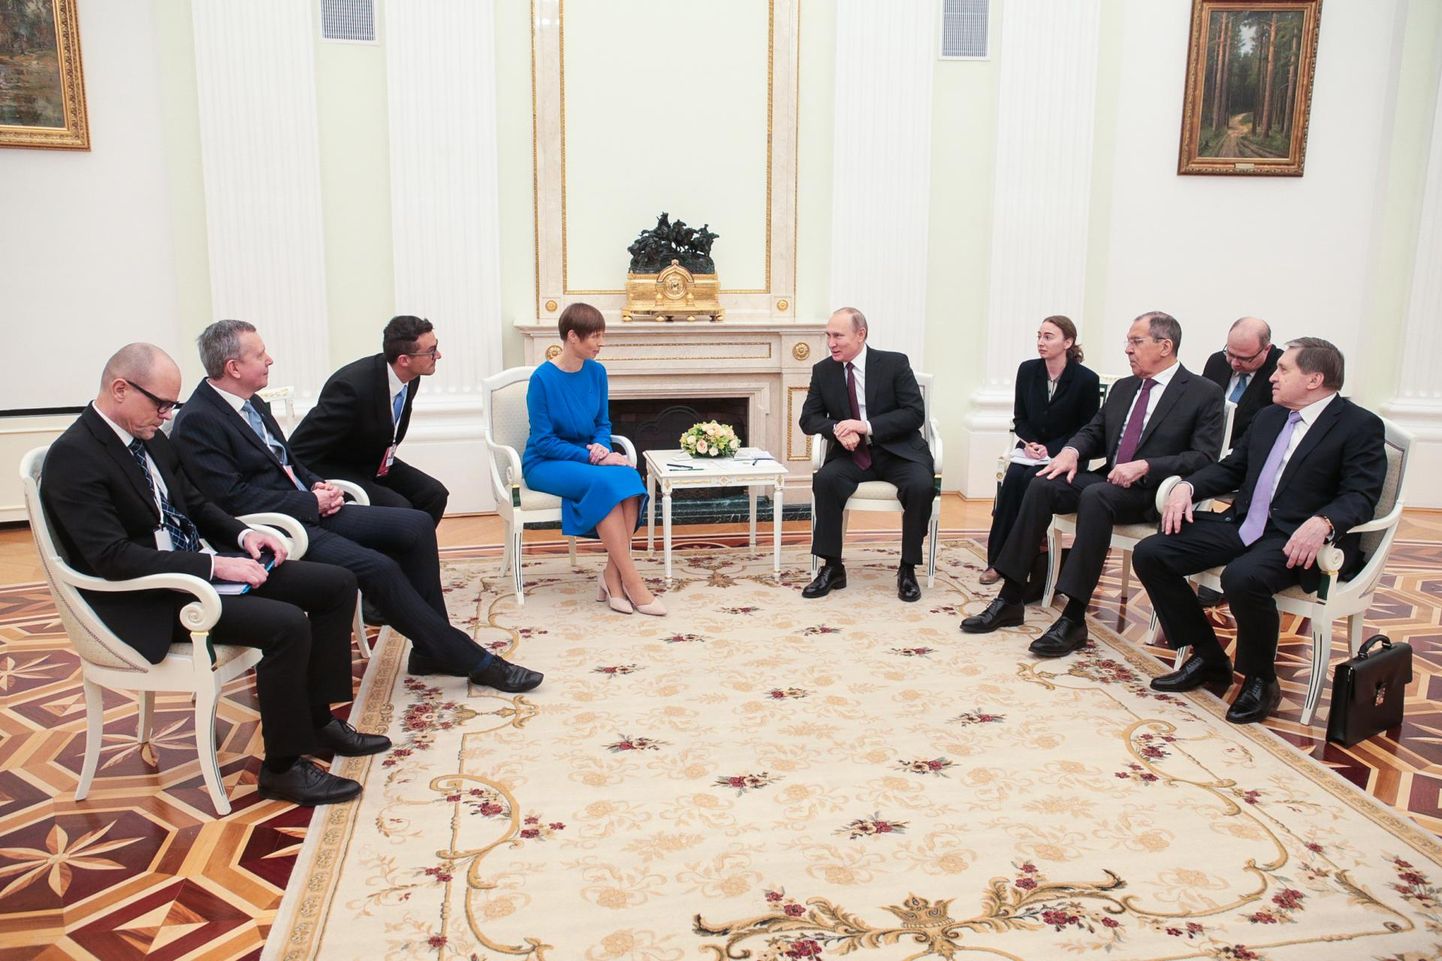 В апреле 2019 года президент Эстонии Керсти Кальюлайд встретилась в Кремле с российским лидером Владимиром Путиным.